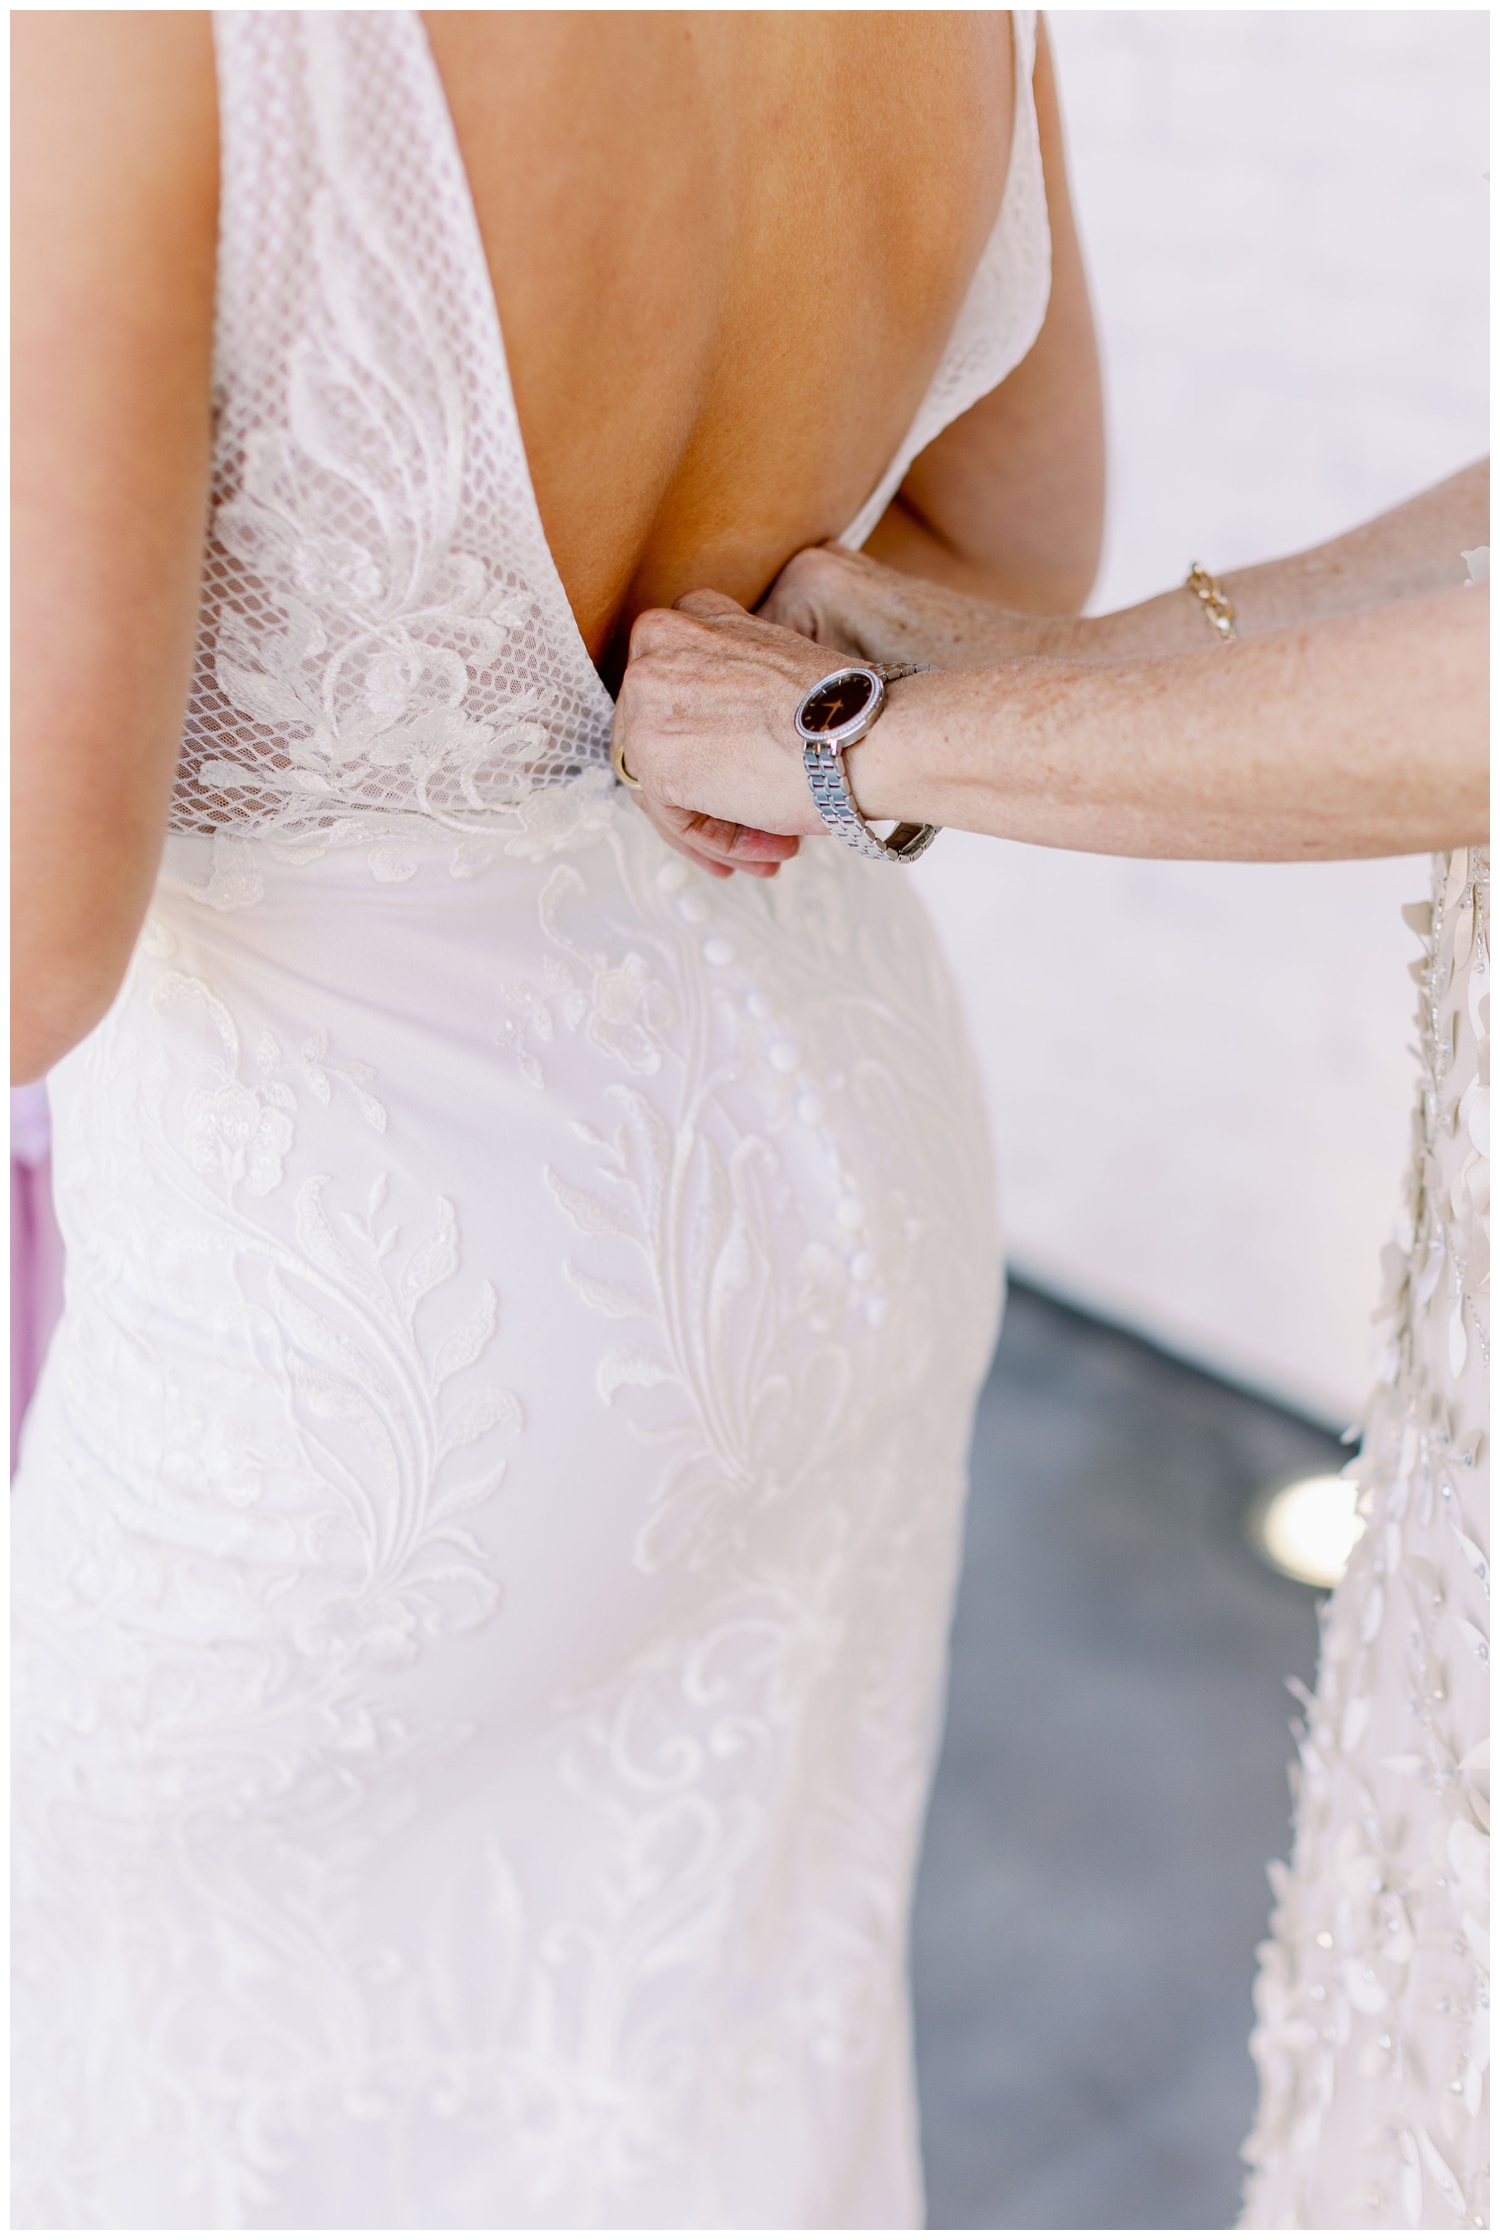 mother of bride's hands fastening wedding gown